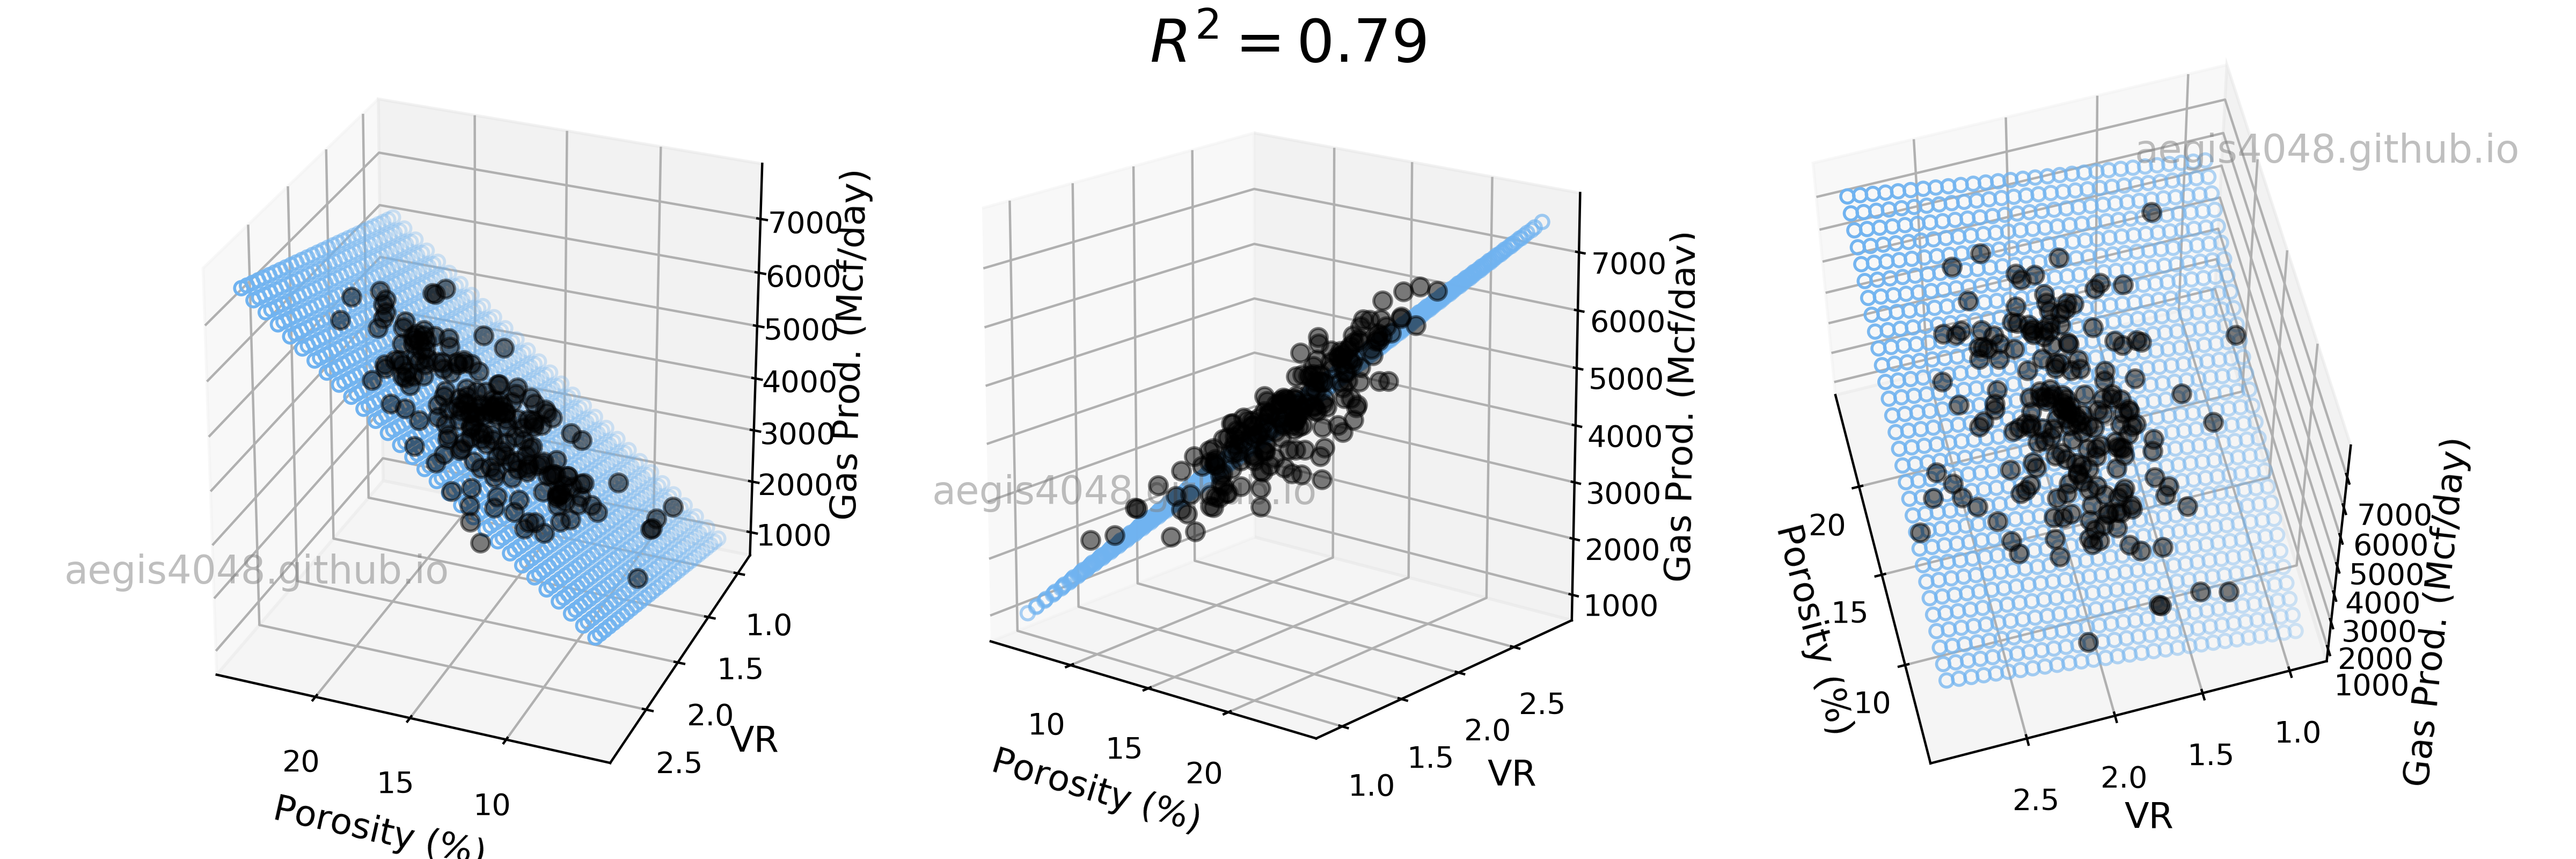 regression analysis python excel data